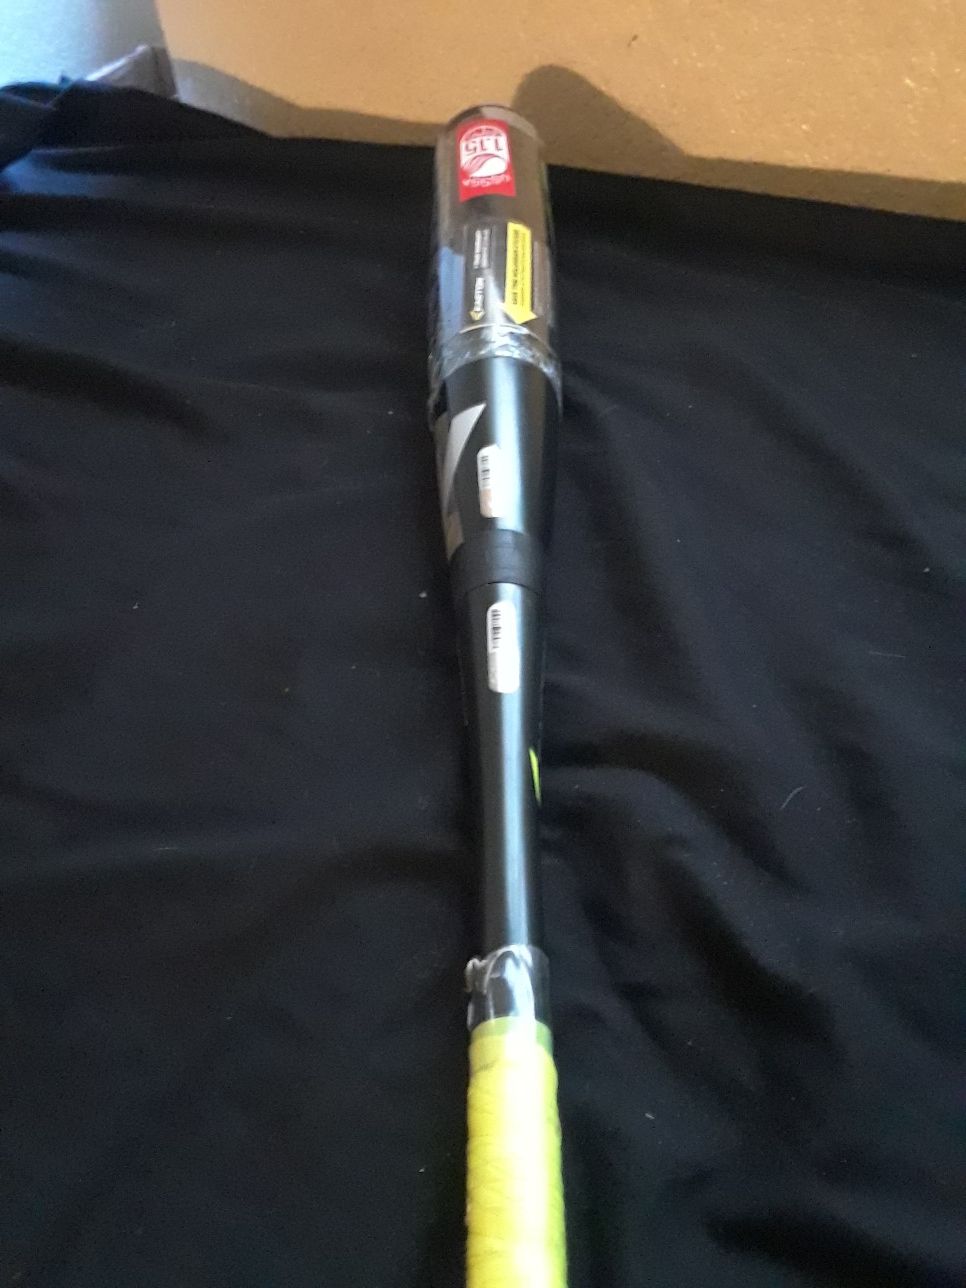 Easton s2 baseball bat